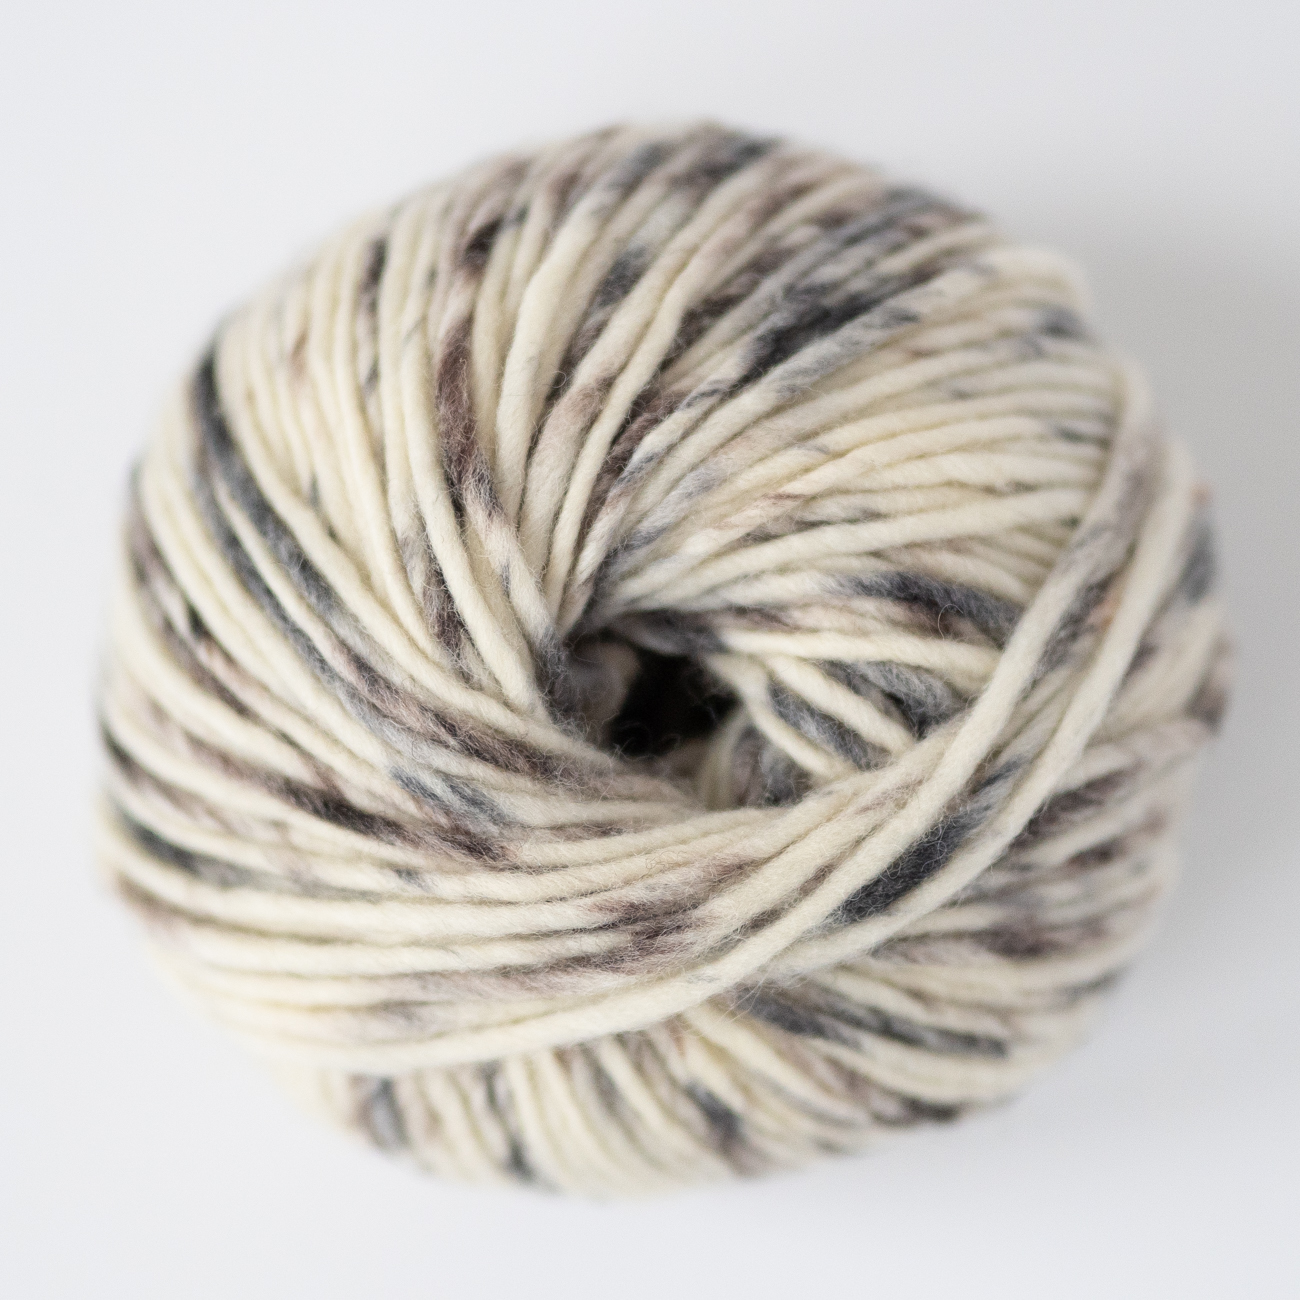  - Mocca Ice cream yarn | Sprinkle yarn - by HipKnitShop - 25/08/2019